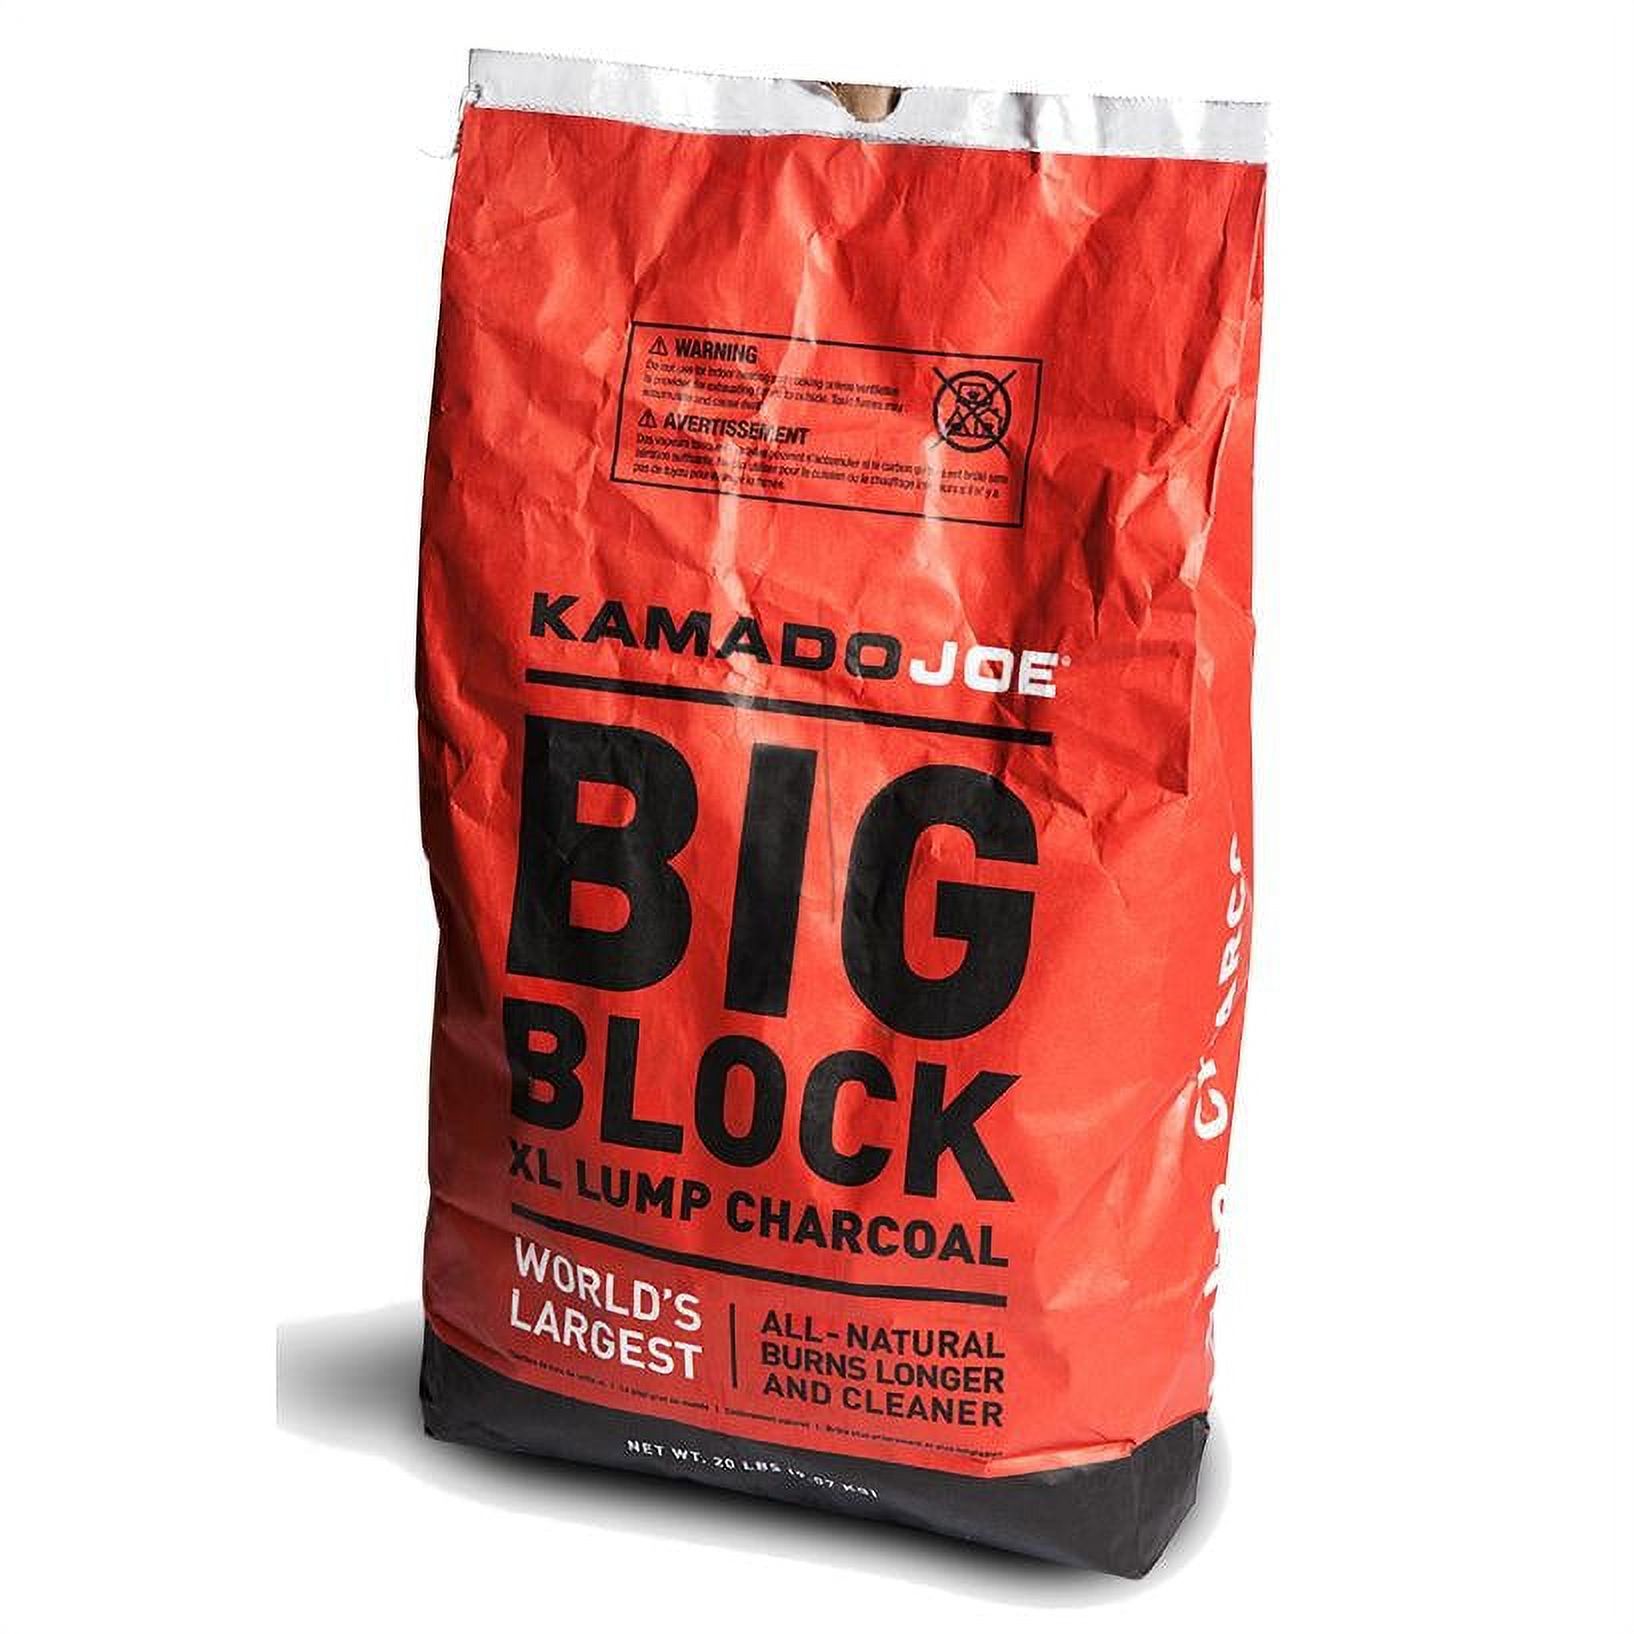 Kamado Joe All Natural Big Block Argentinian XL Premium Lump Charcoal, 20 Pounds - image 1 of 2